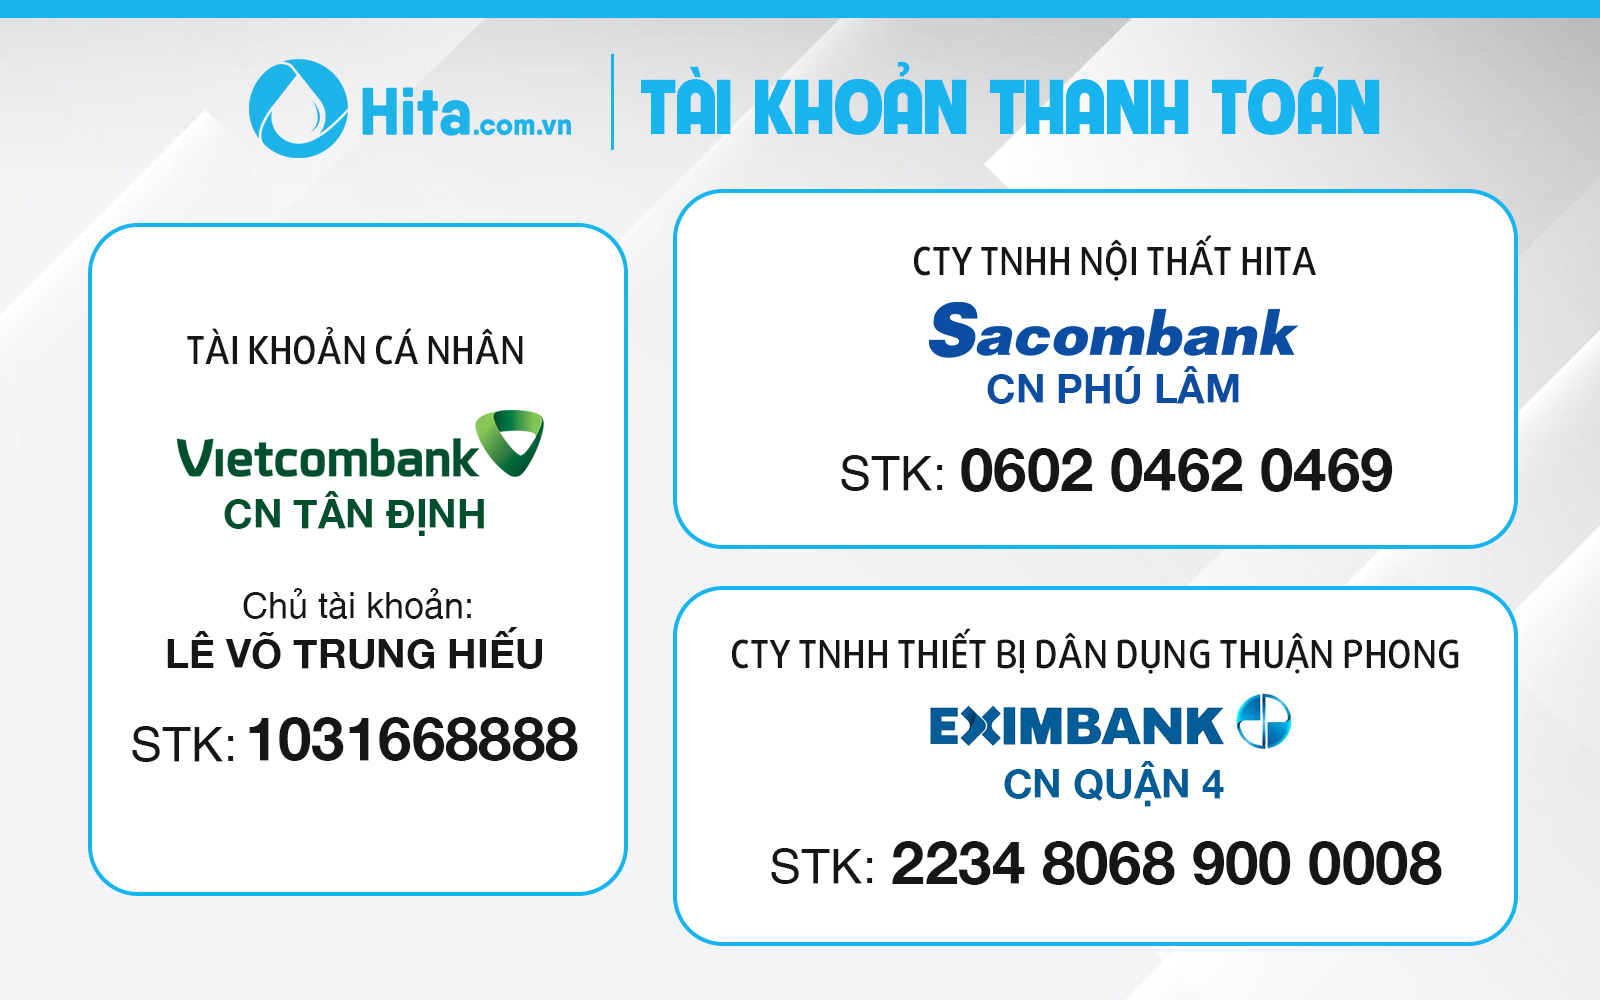 HITA.com.vn - thông tin tài khoản thanh toán cho công ty nội thất HITA